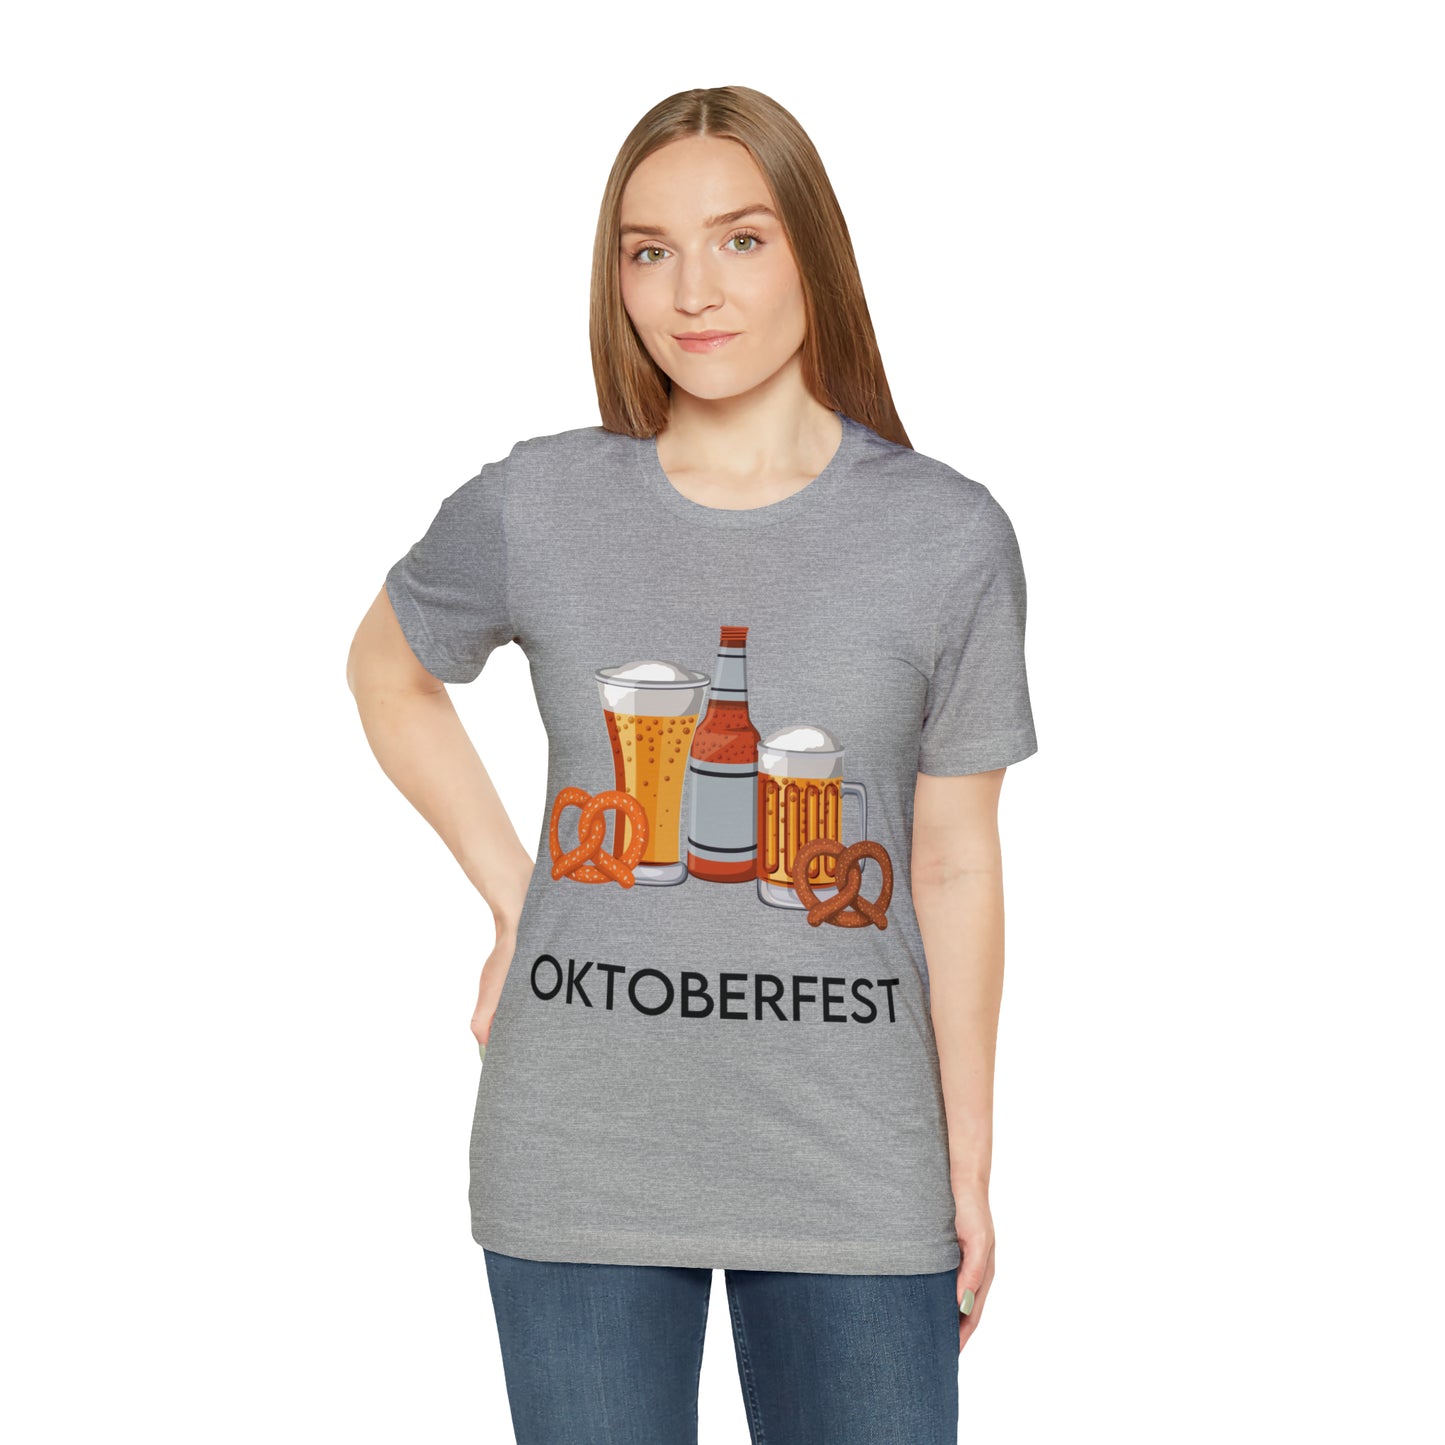 Oktoberfest Beer Mugs, Bottles, and Pretzels T-Shirt - Classic Unisex Tee for Festive Fun! Unisex Jersey Short Sleeve Tee